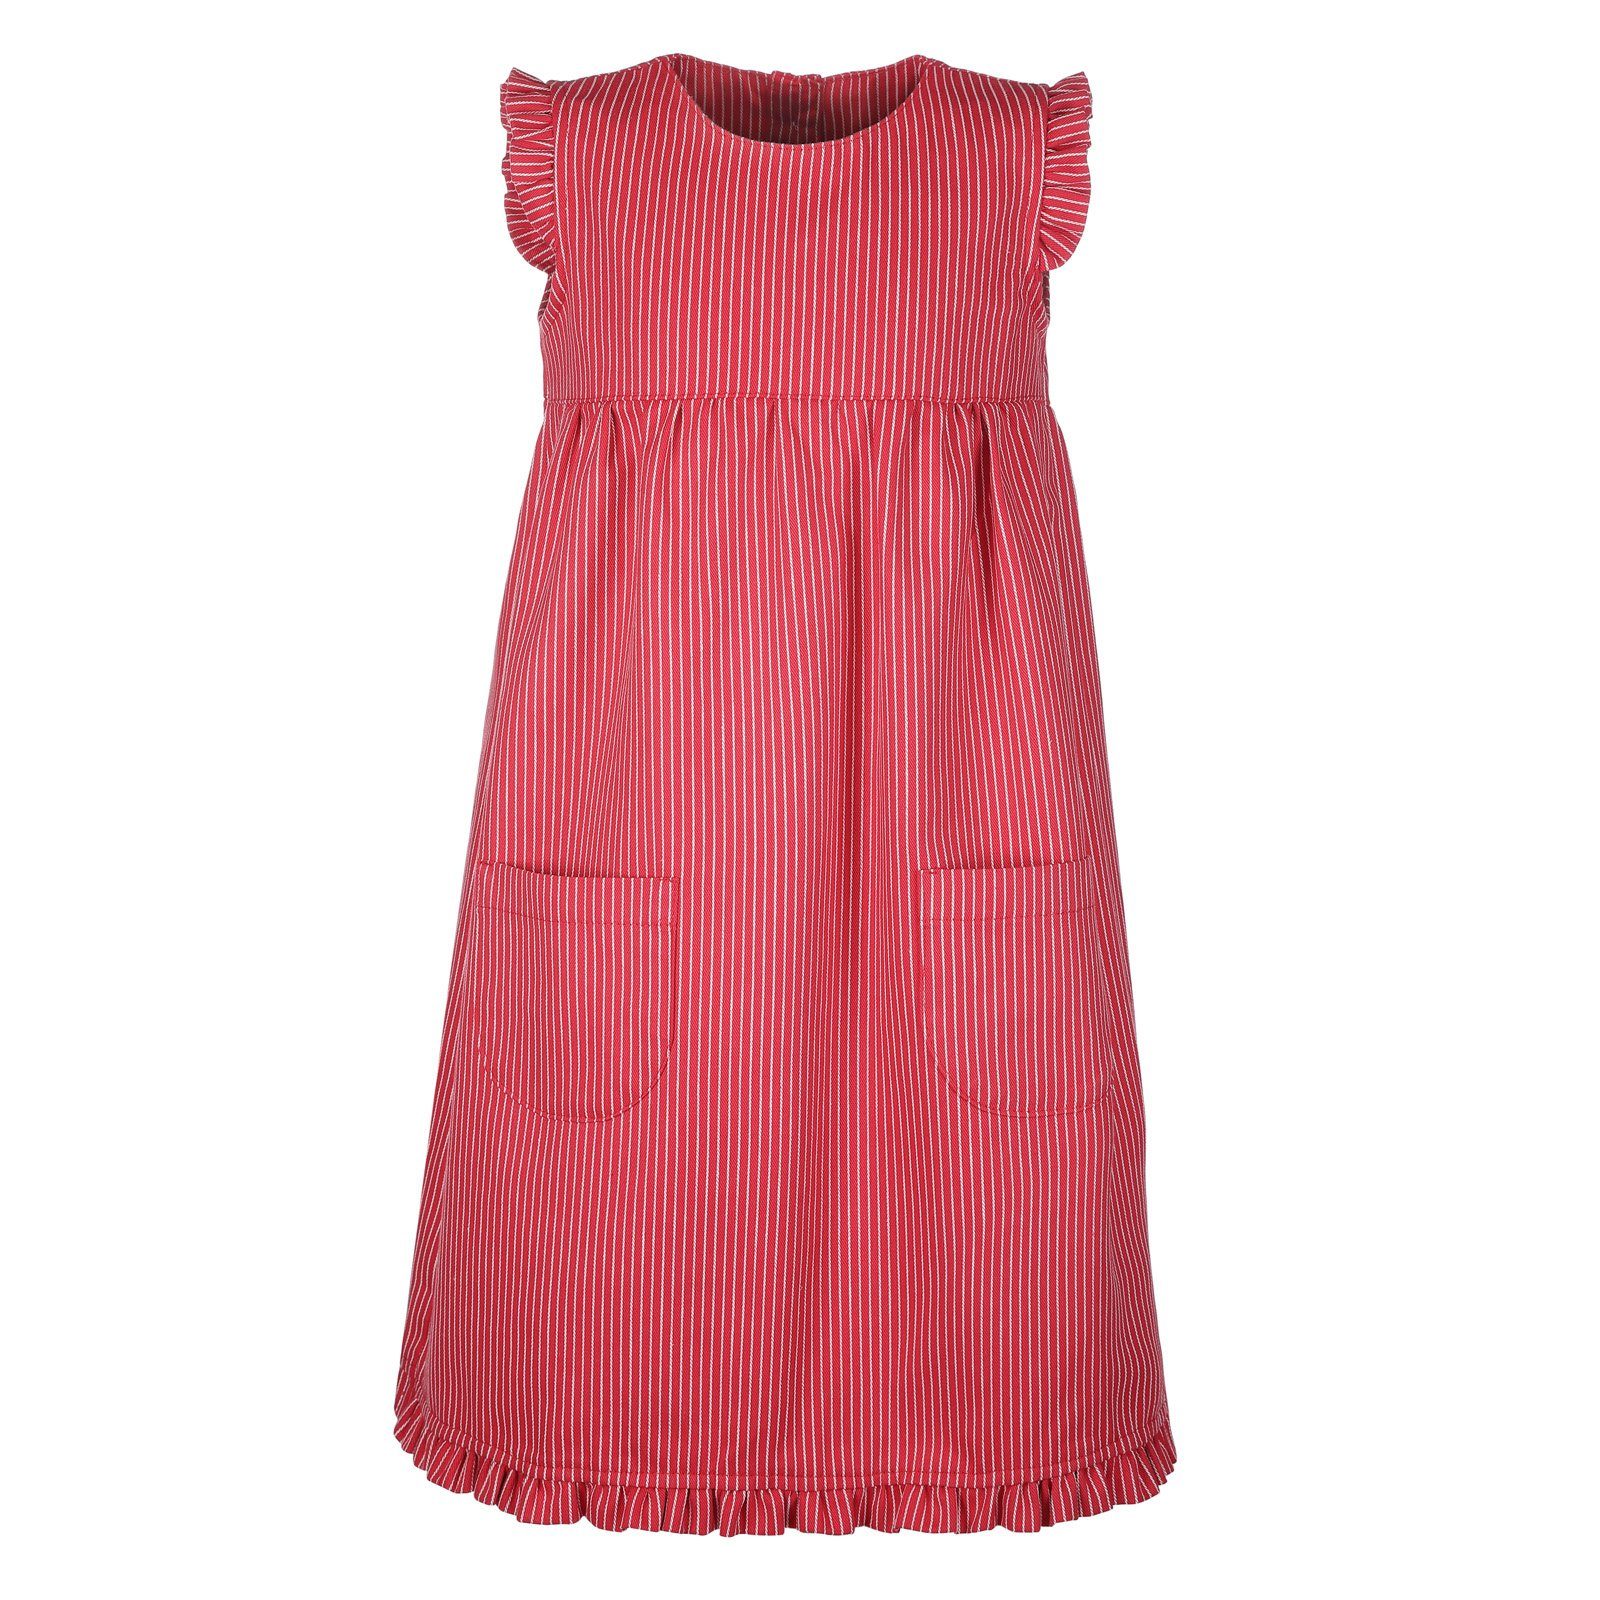 für Streifen Streifen - schmaler Strandkleid modAS Streifenkleid Kinder Mädchen Rot (112) Fischerkleid Maritim